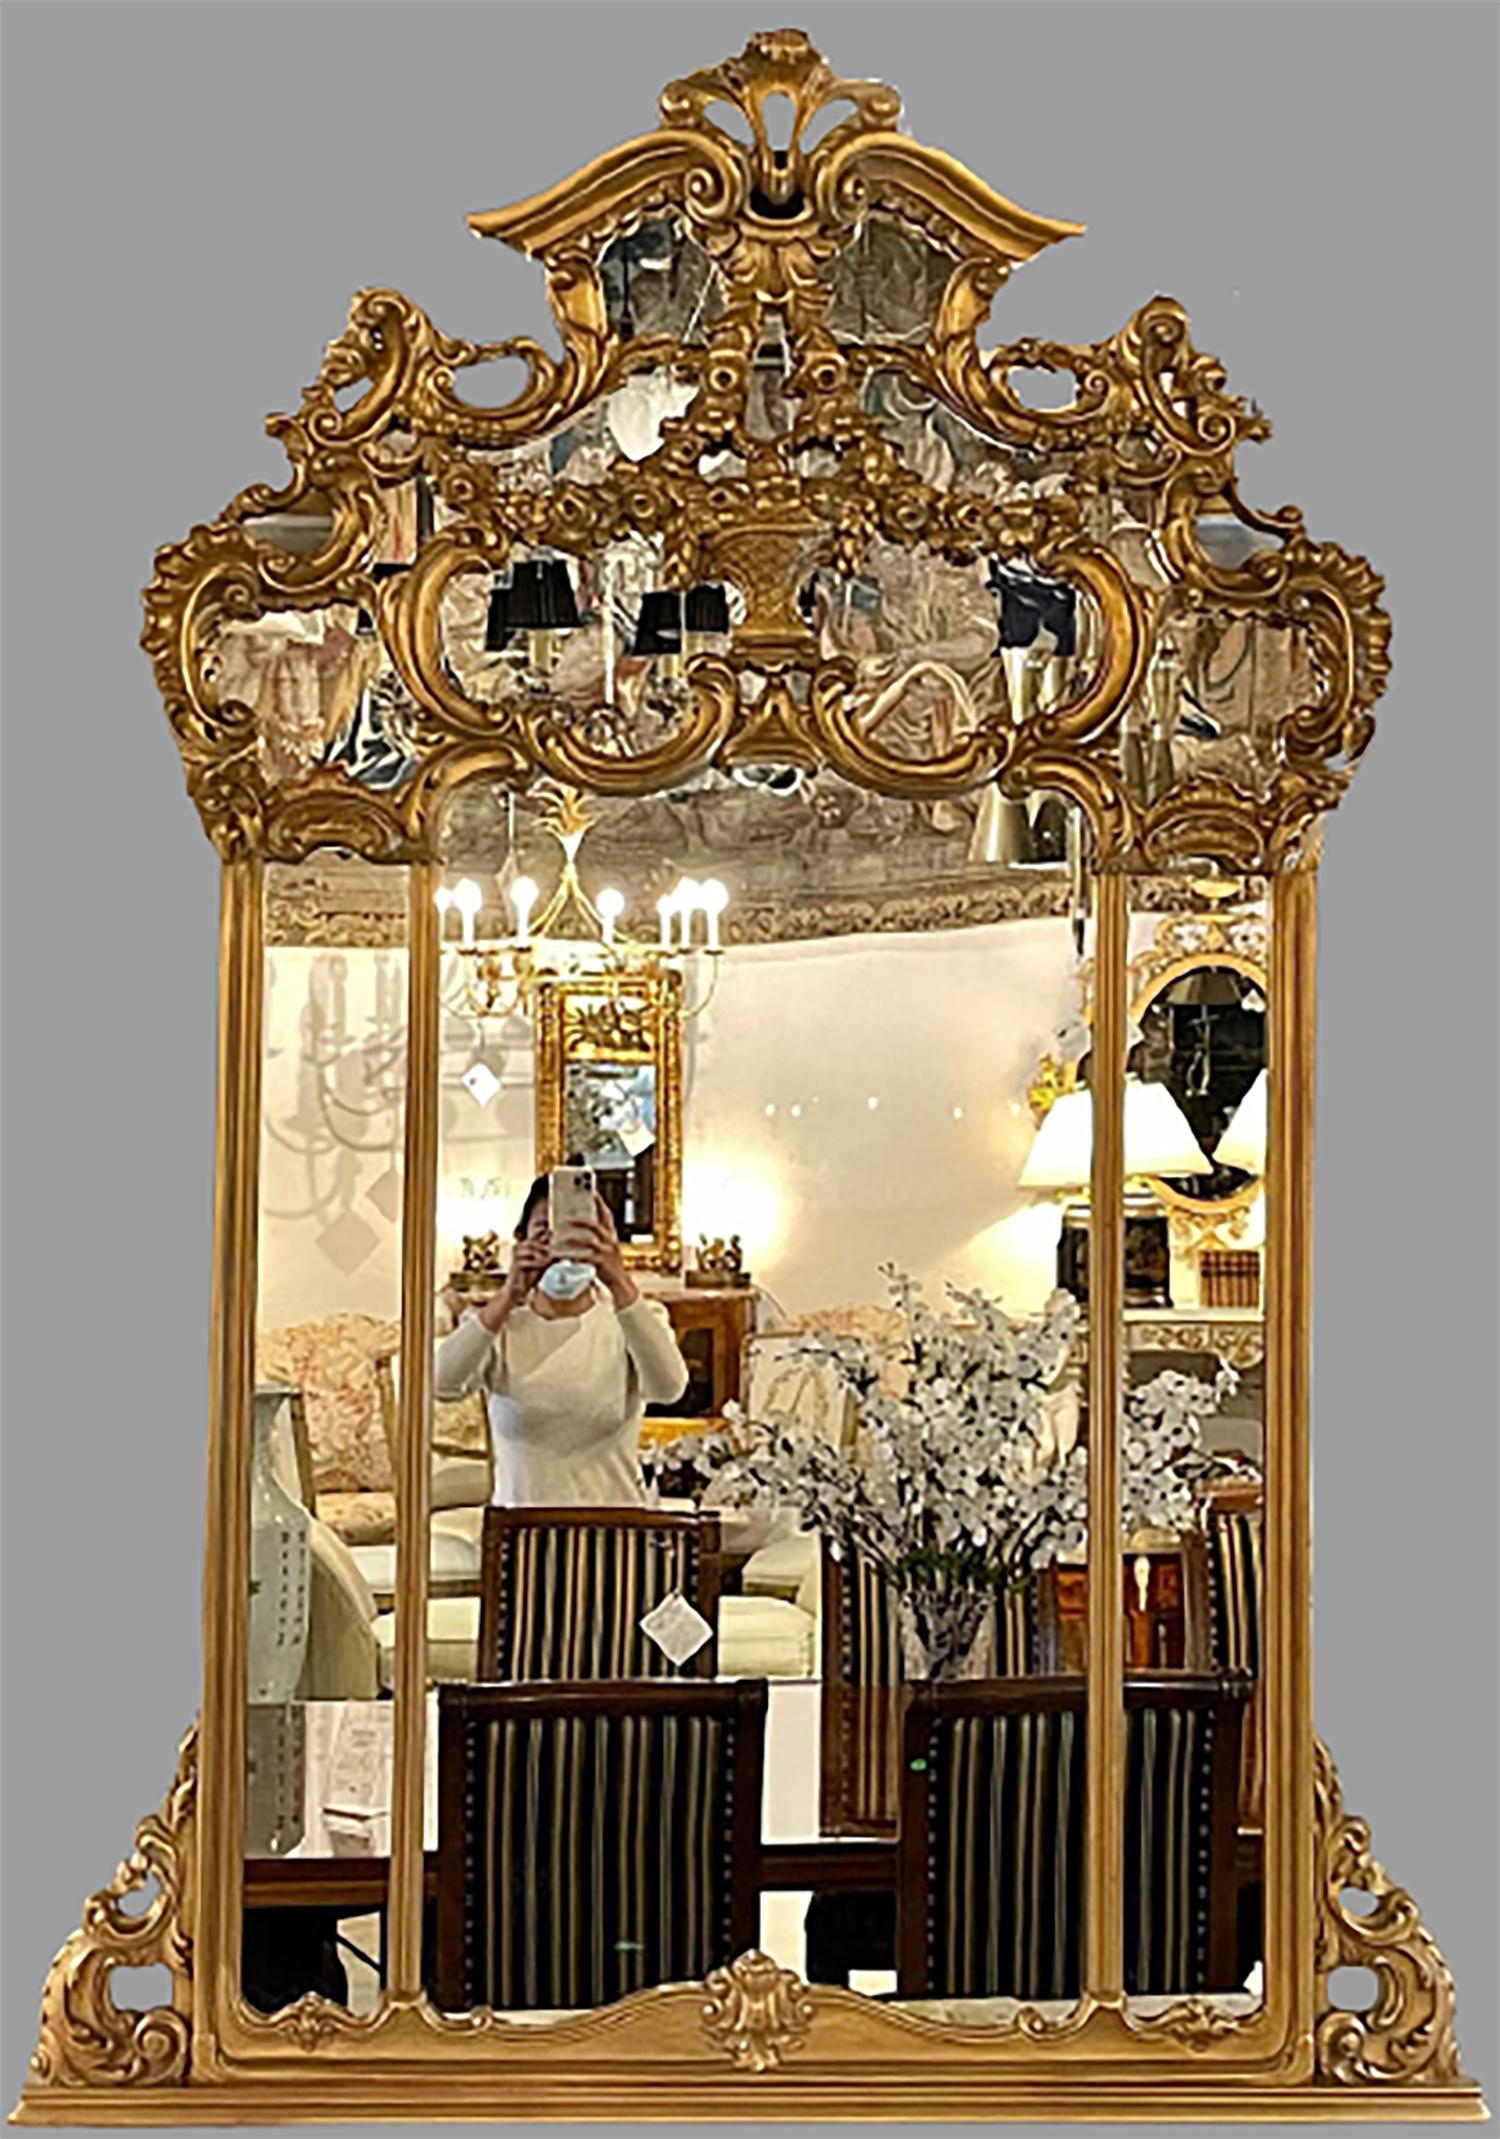 Bois doré au-dessus du miroir de cheminée. Ce miroir mural ou de console est tout simplement magnifique et ne manquera pas d'ajouter un reflet raffiné à n'importe quel intérieur. Le miroir central transparent est flanqué d'un cadre sculpté et doré